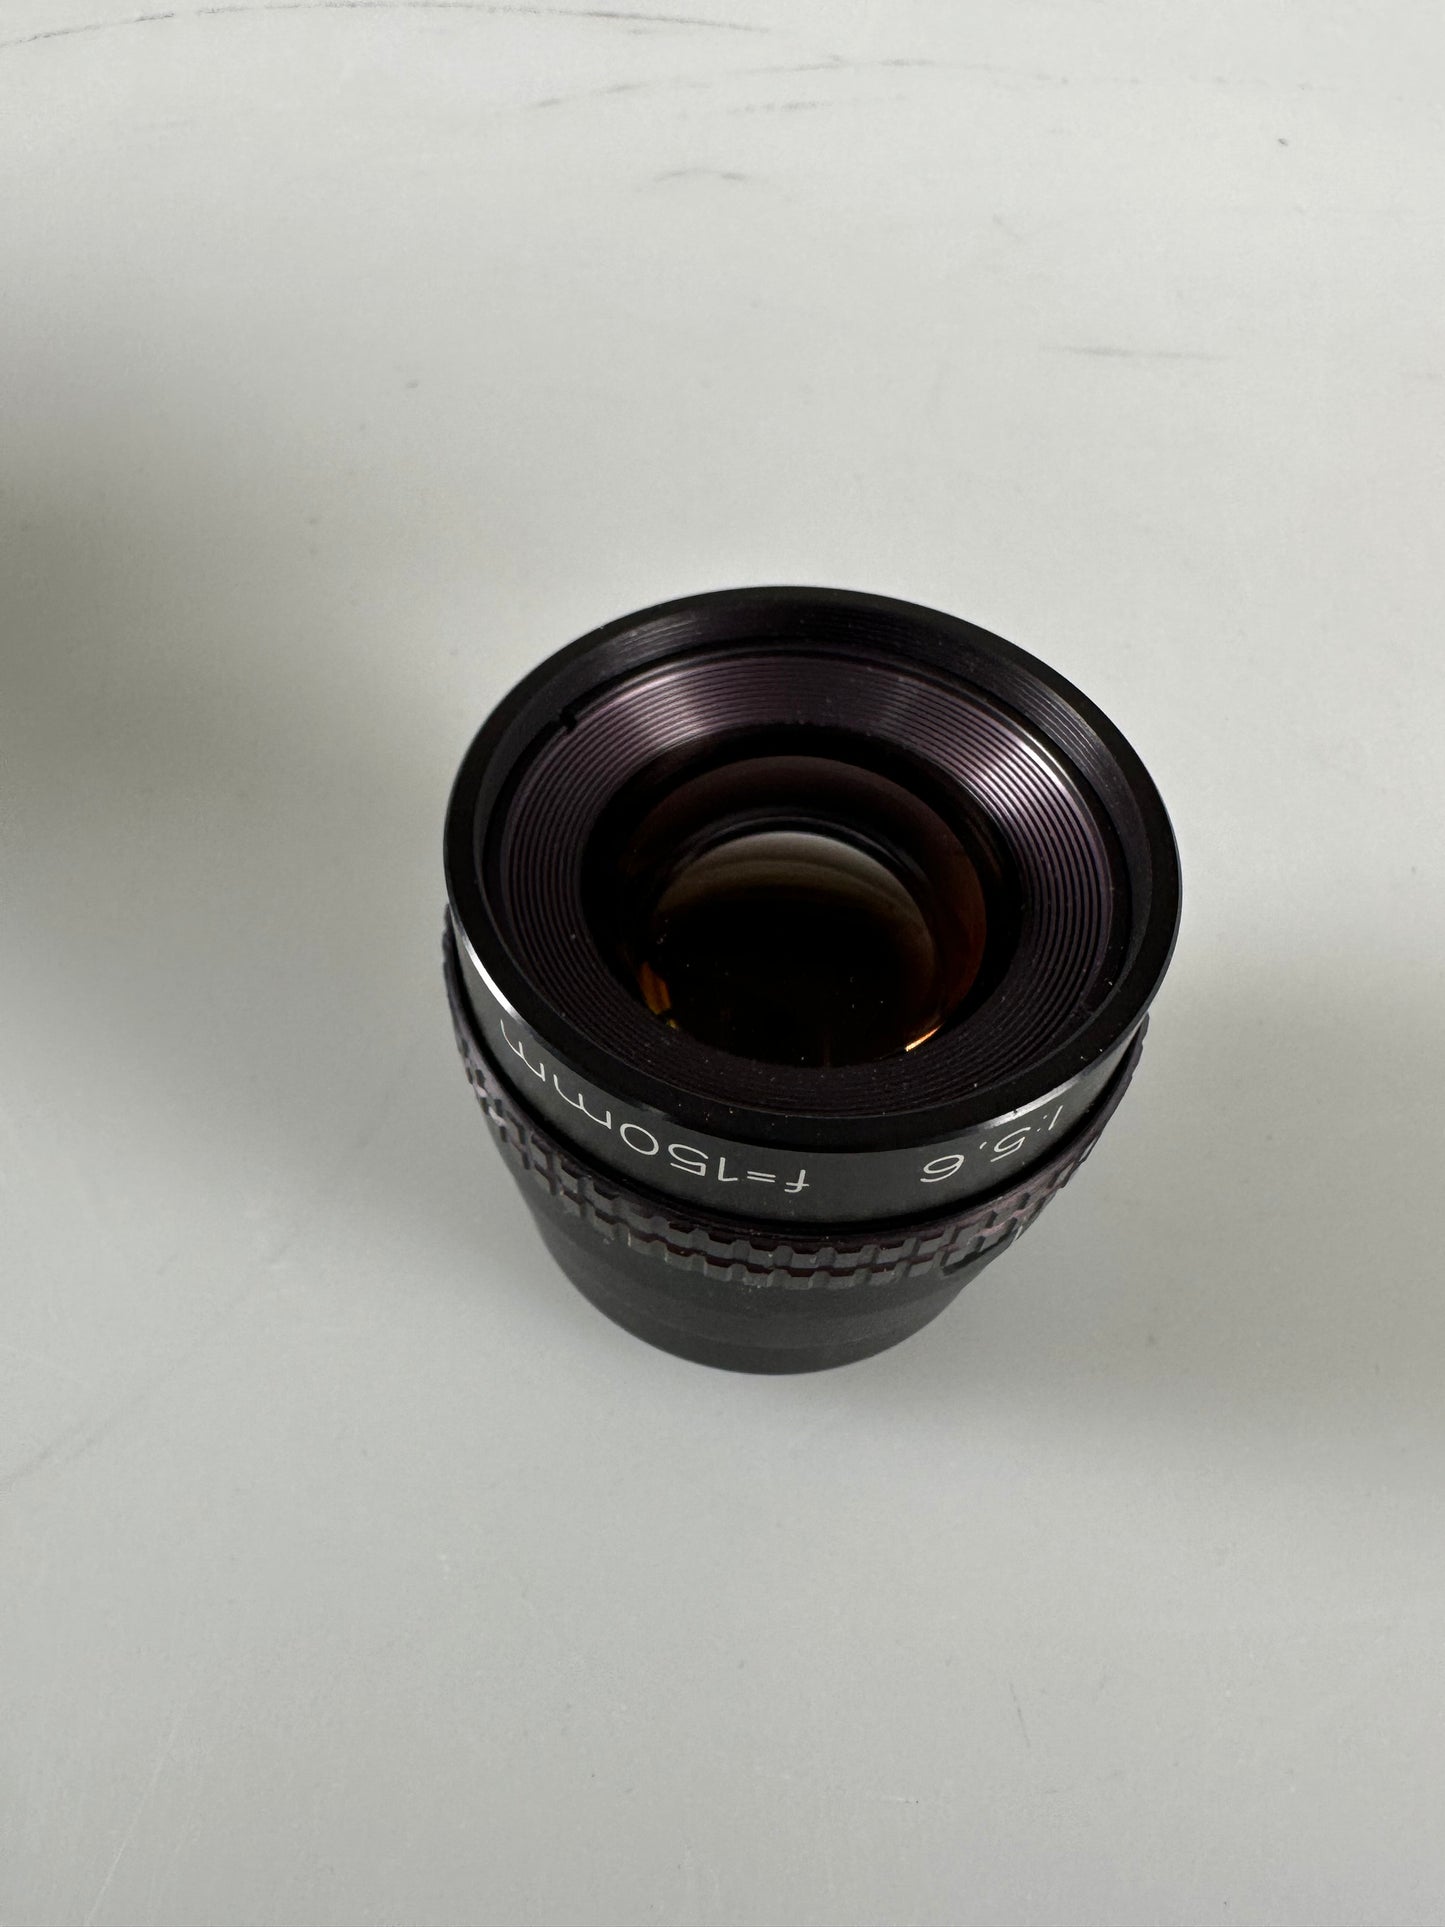 Beseler-HD 150mm f5.6 enlarger lens (Rodenstock Rodagon)